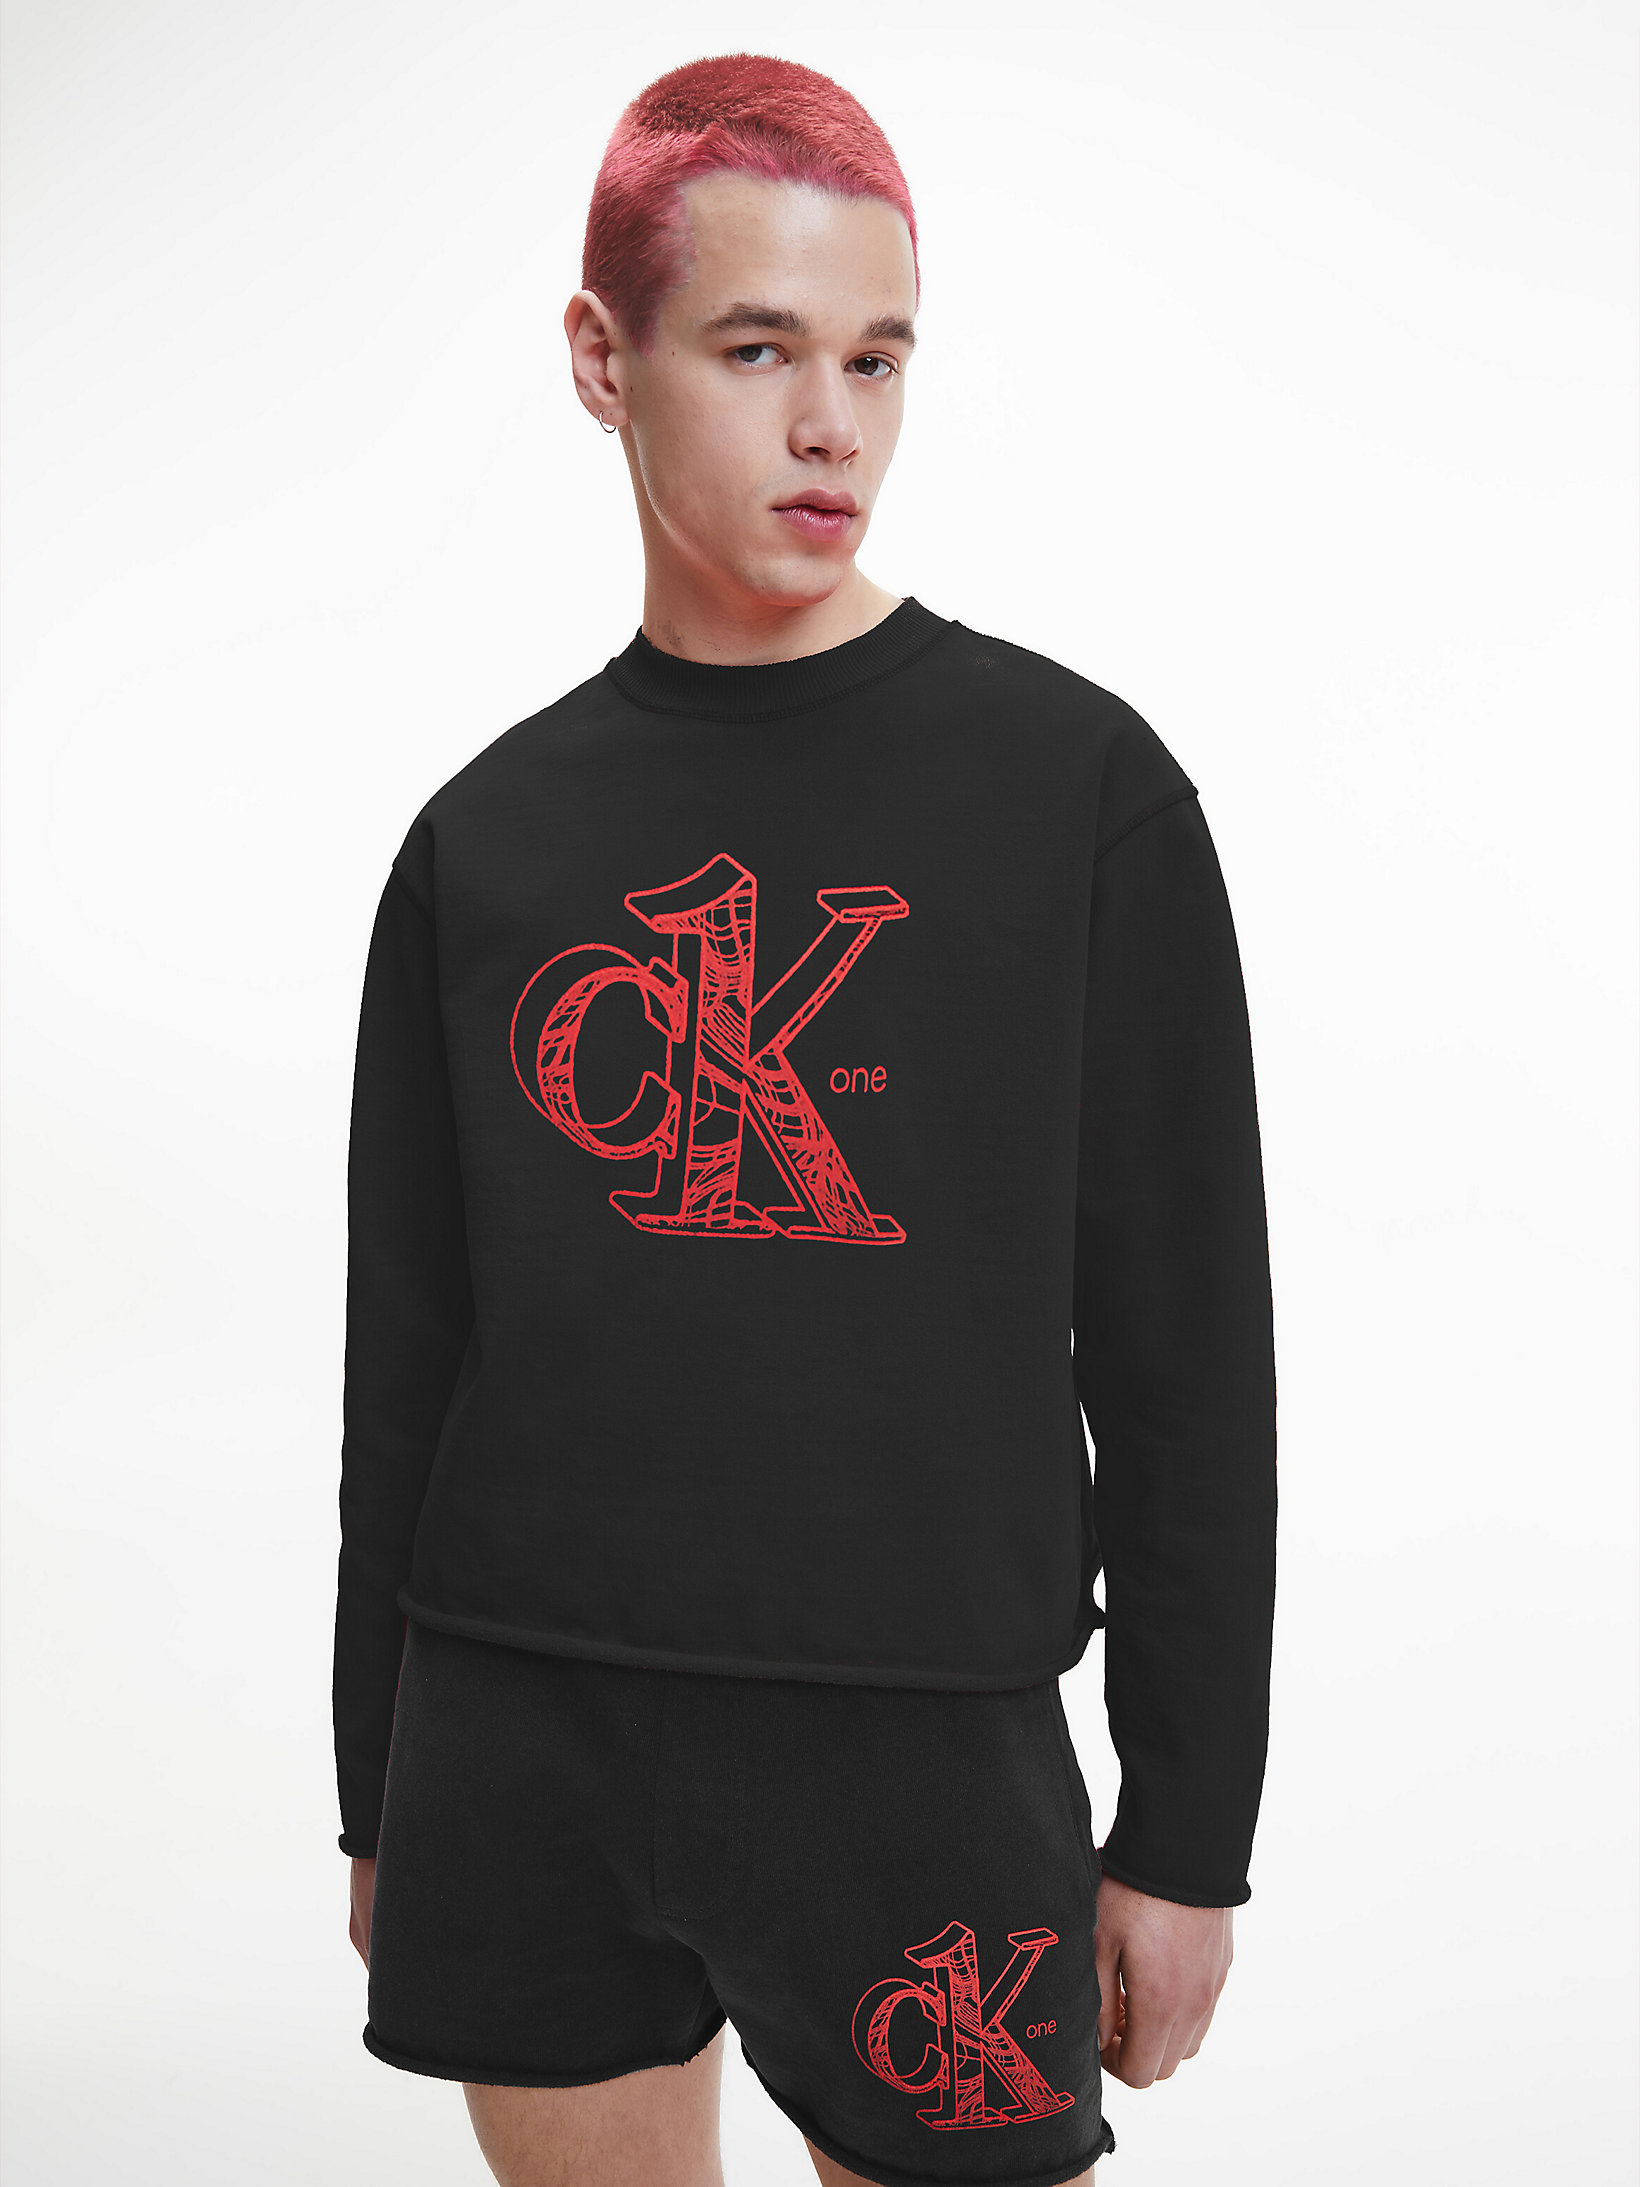 CK Black Unisex Recycled Cotton Sweatshirt - CK One undefined unisex Calvin Klein